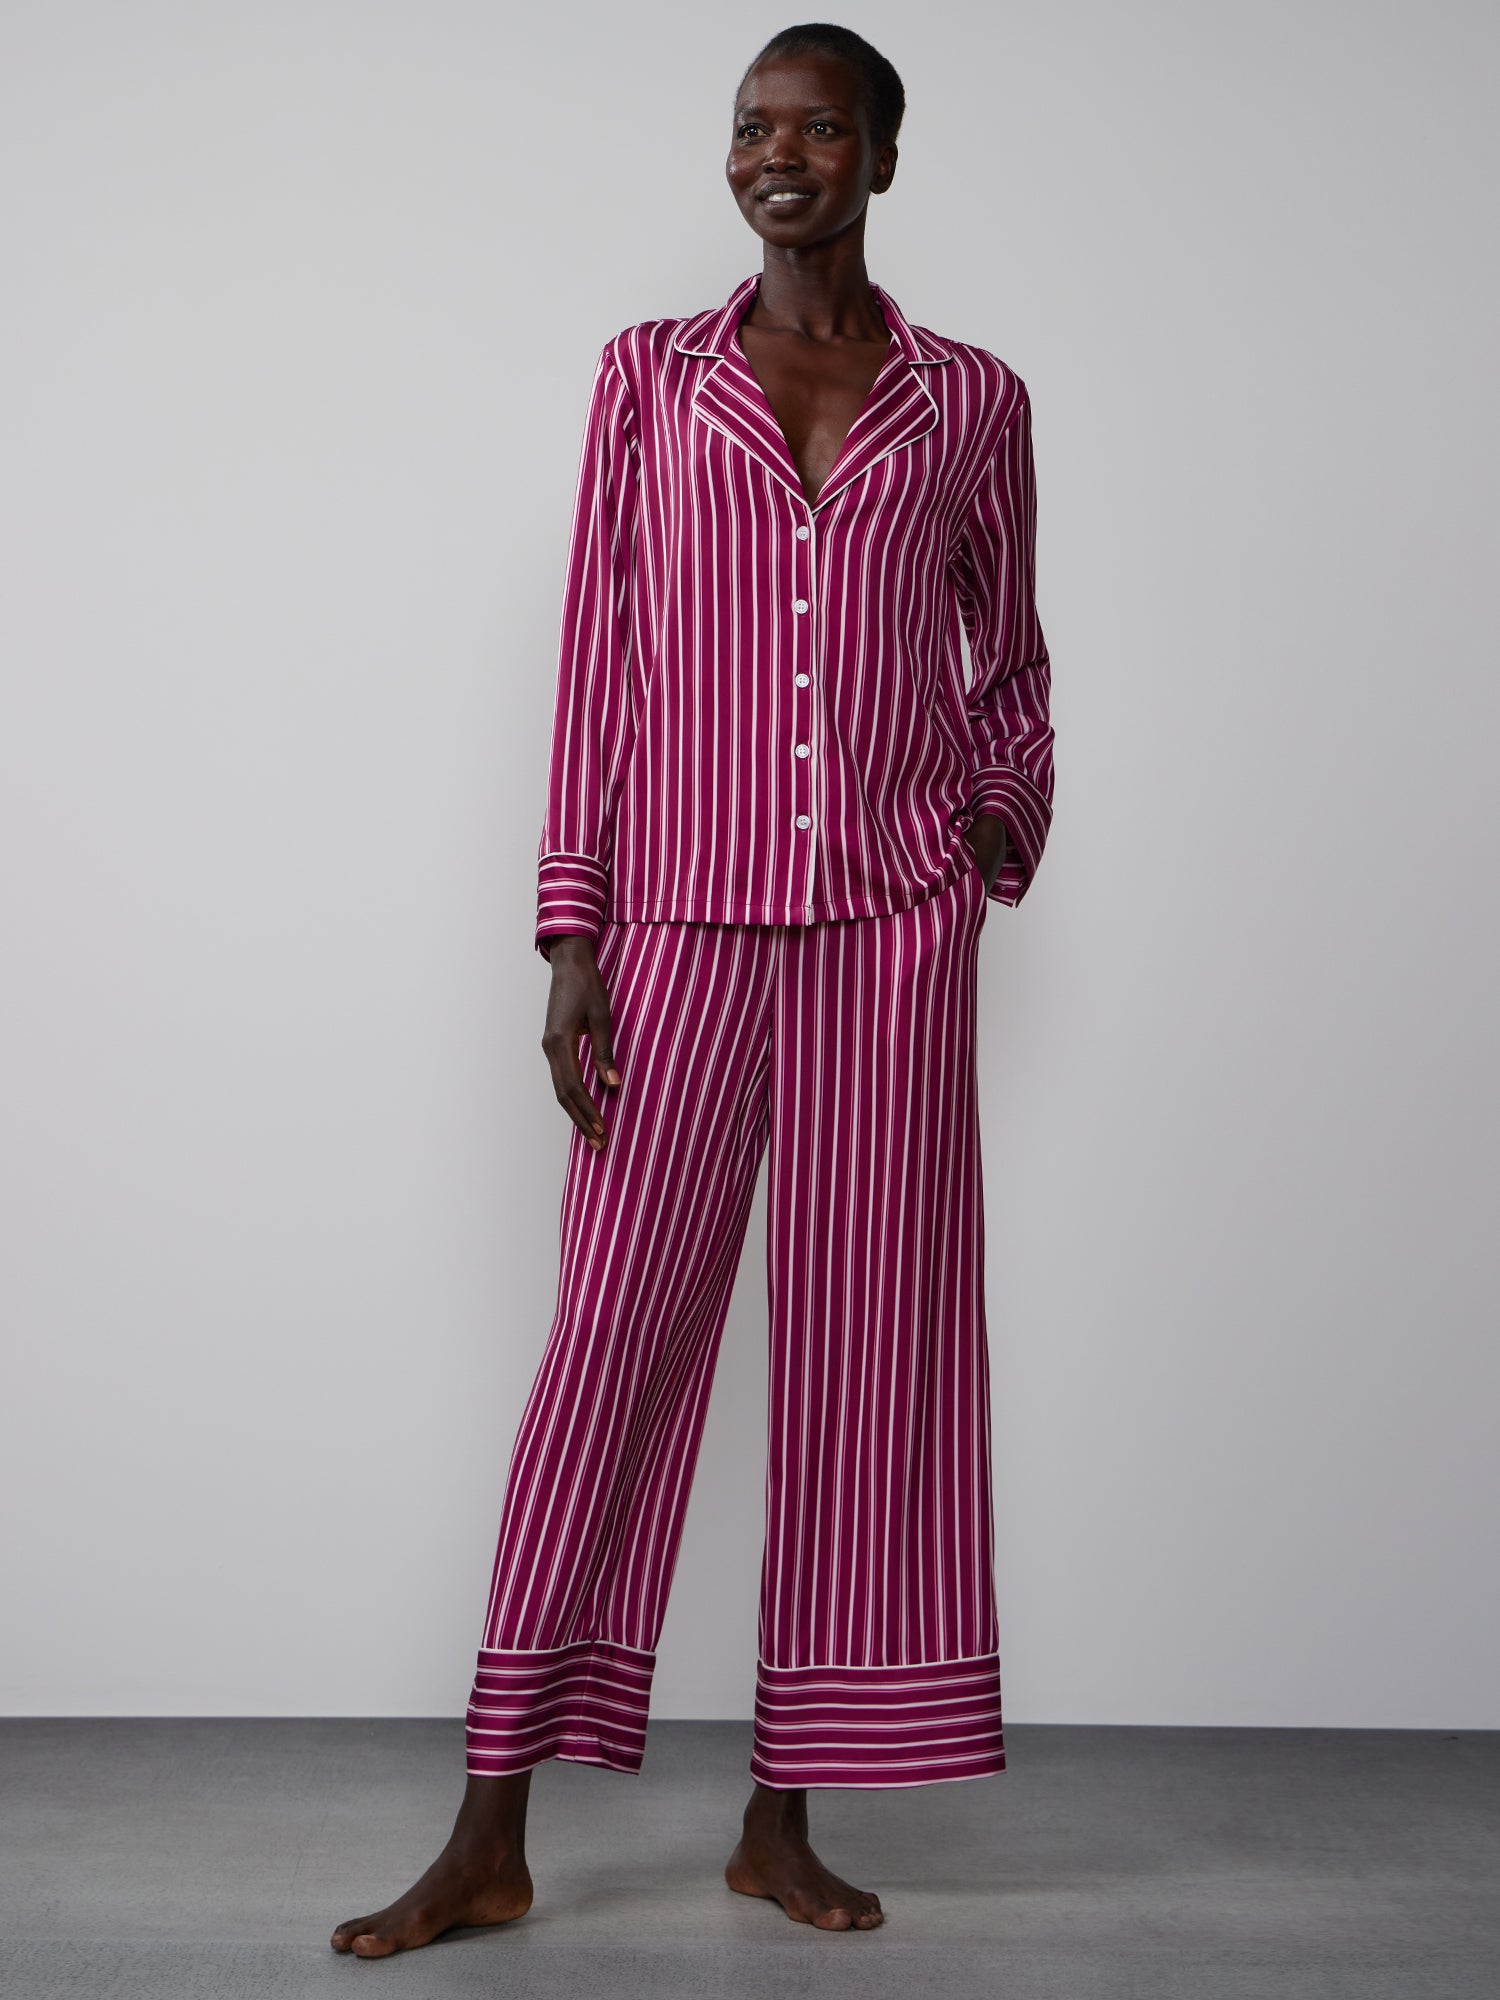 Satin Pajamas - Red/white striped - Ladies